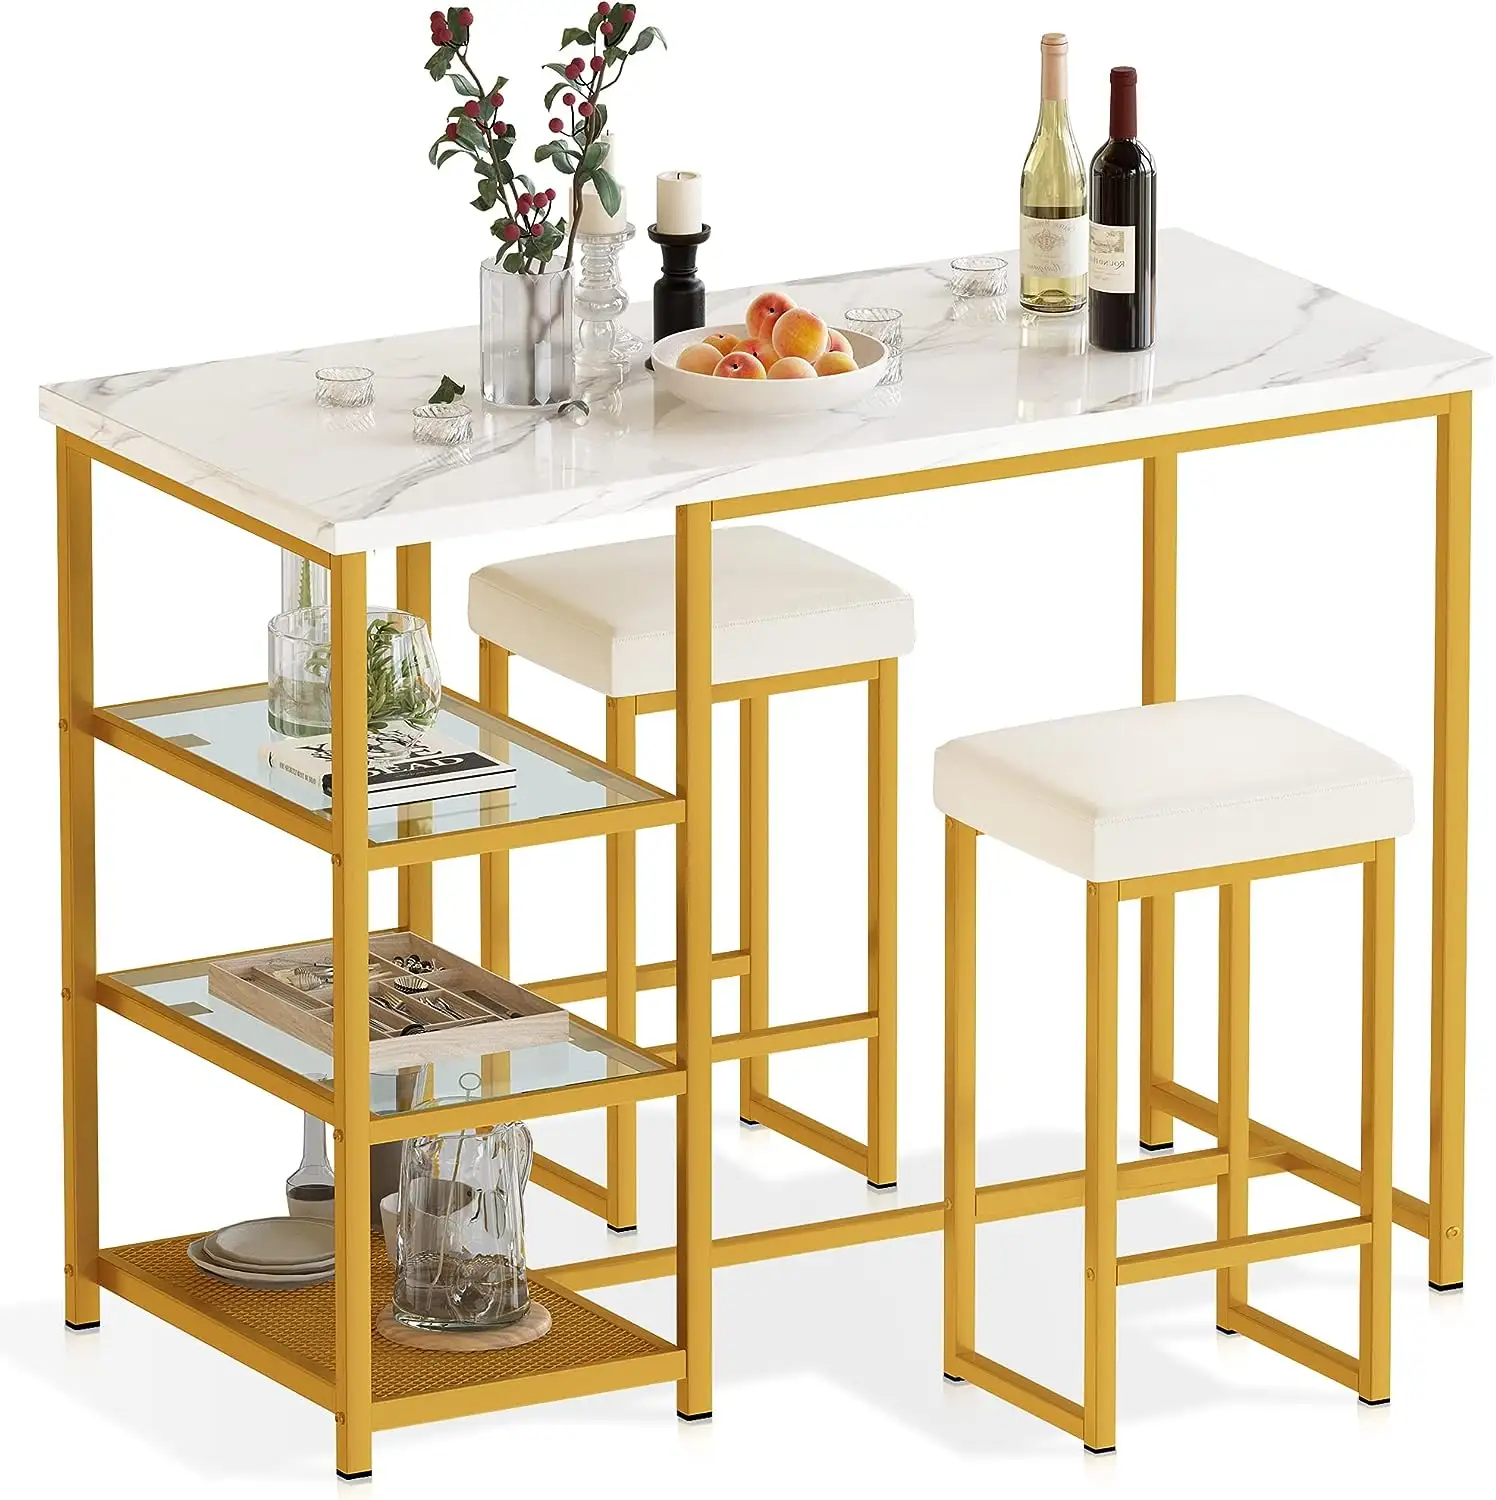 Современный модный и роскошный обеденный набор из 3 предметов белый стол с трехуровневой полкой для хранения вина стеллаж 2 Кожаные квадратные табуреты